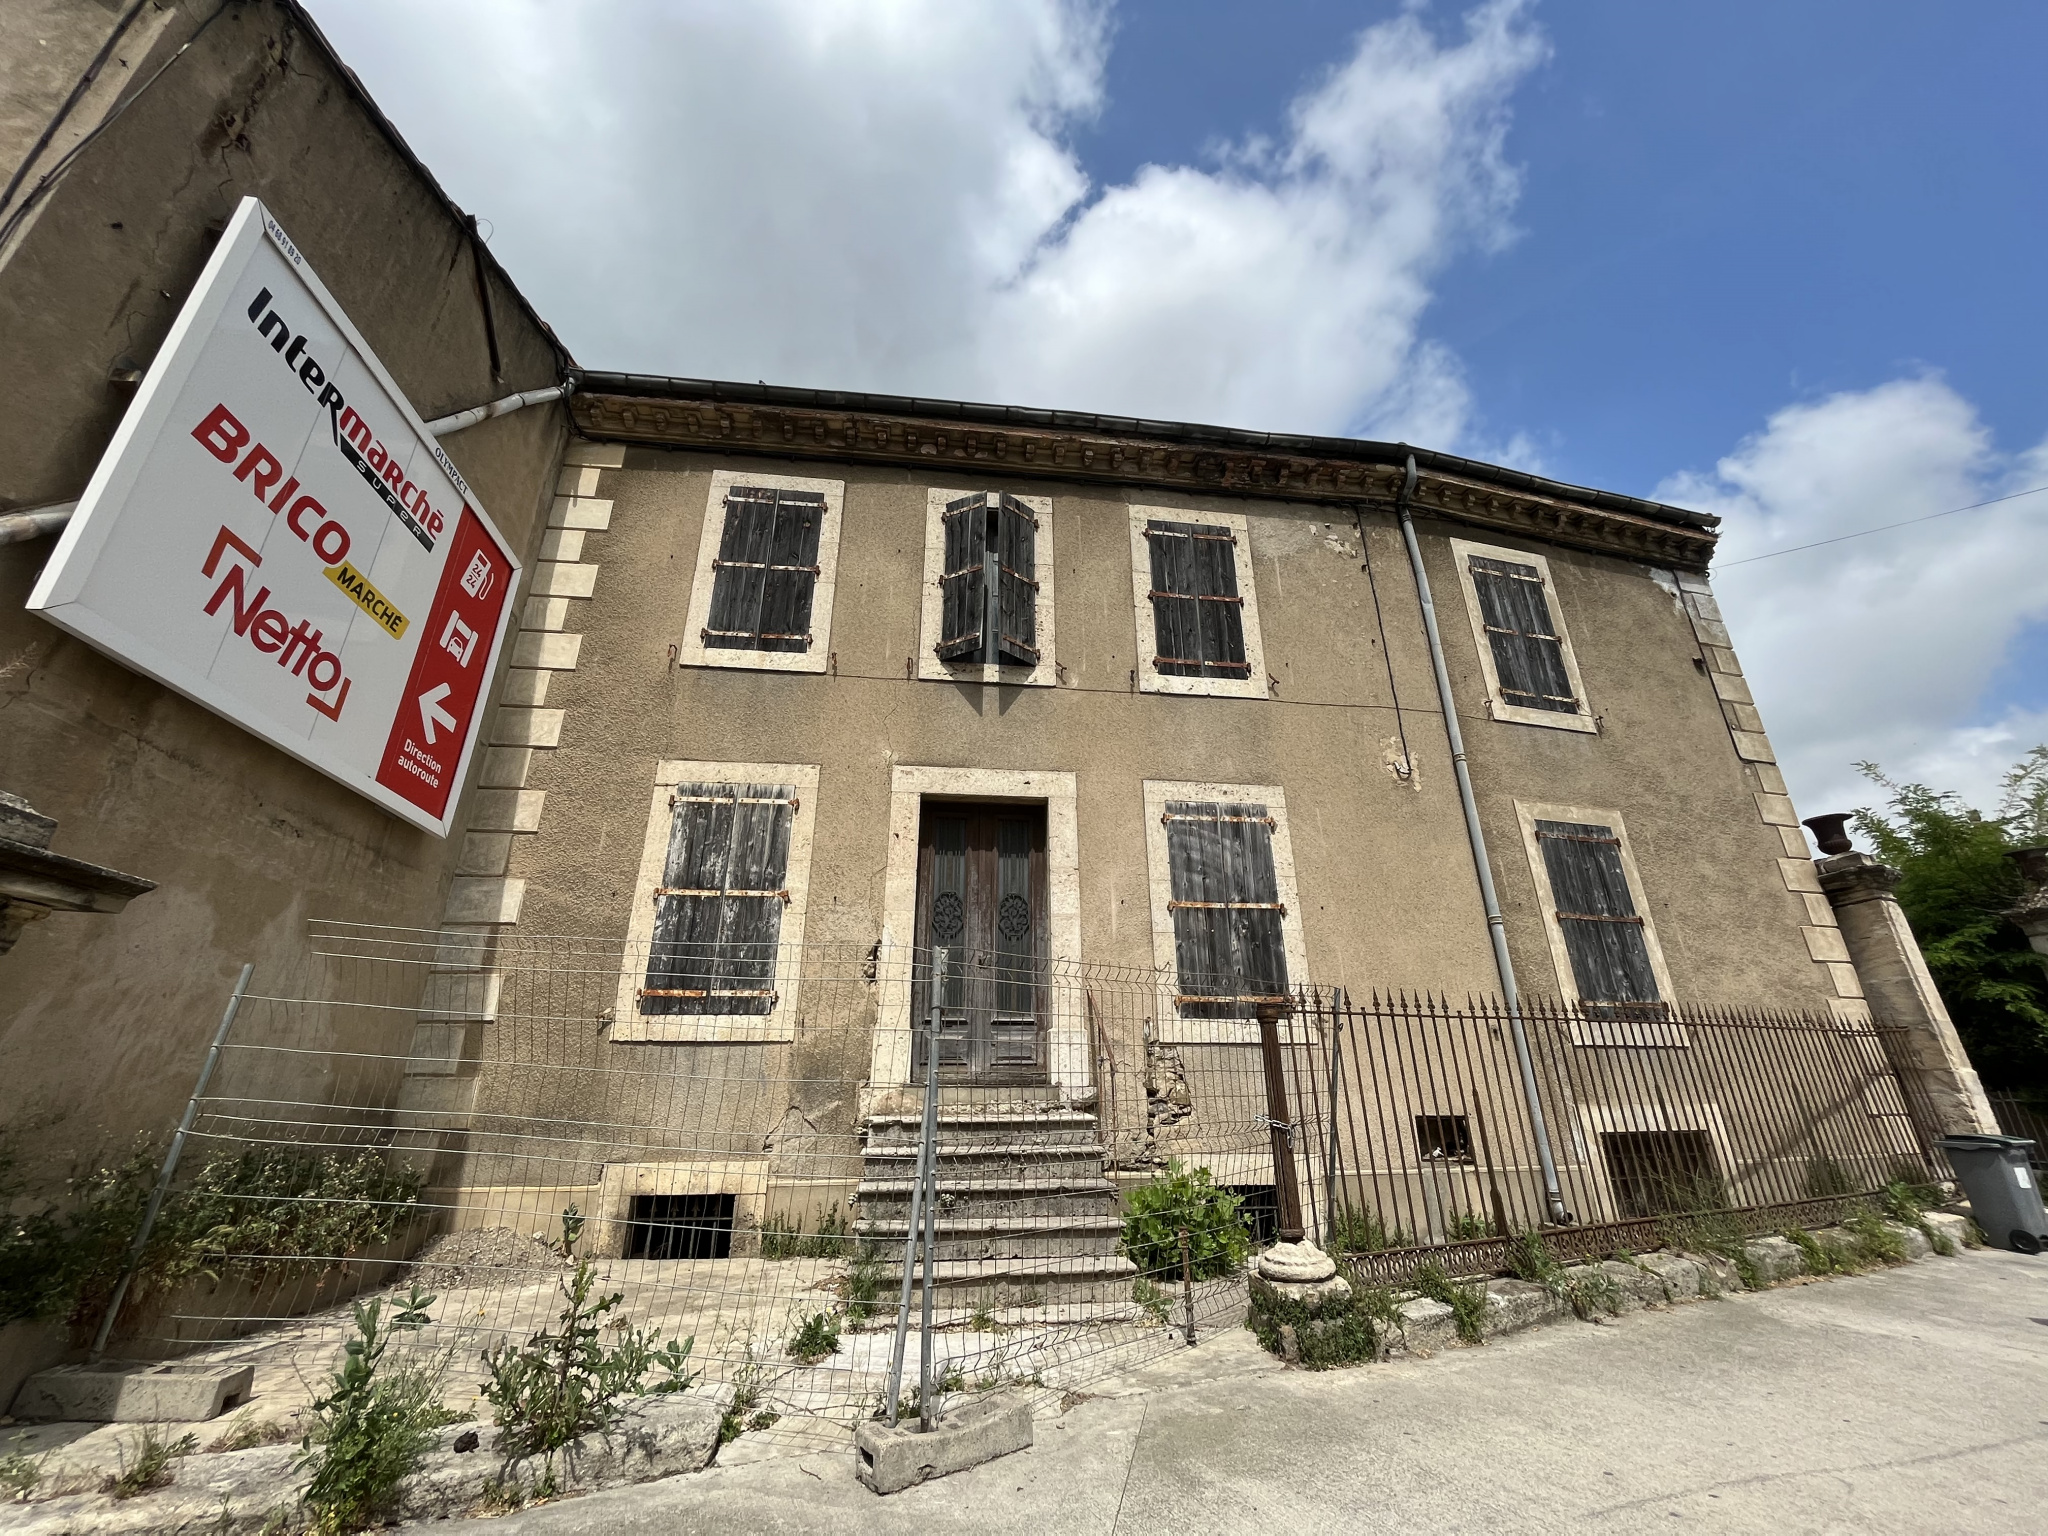 Bureaux Lézignan-Corbières 1200€ Grimois Immobilier